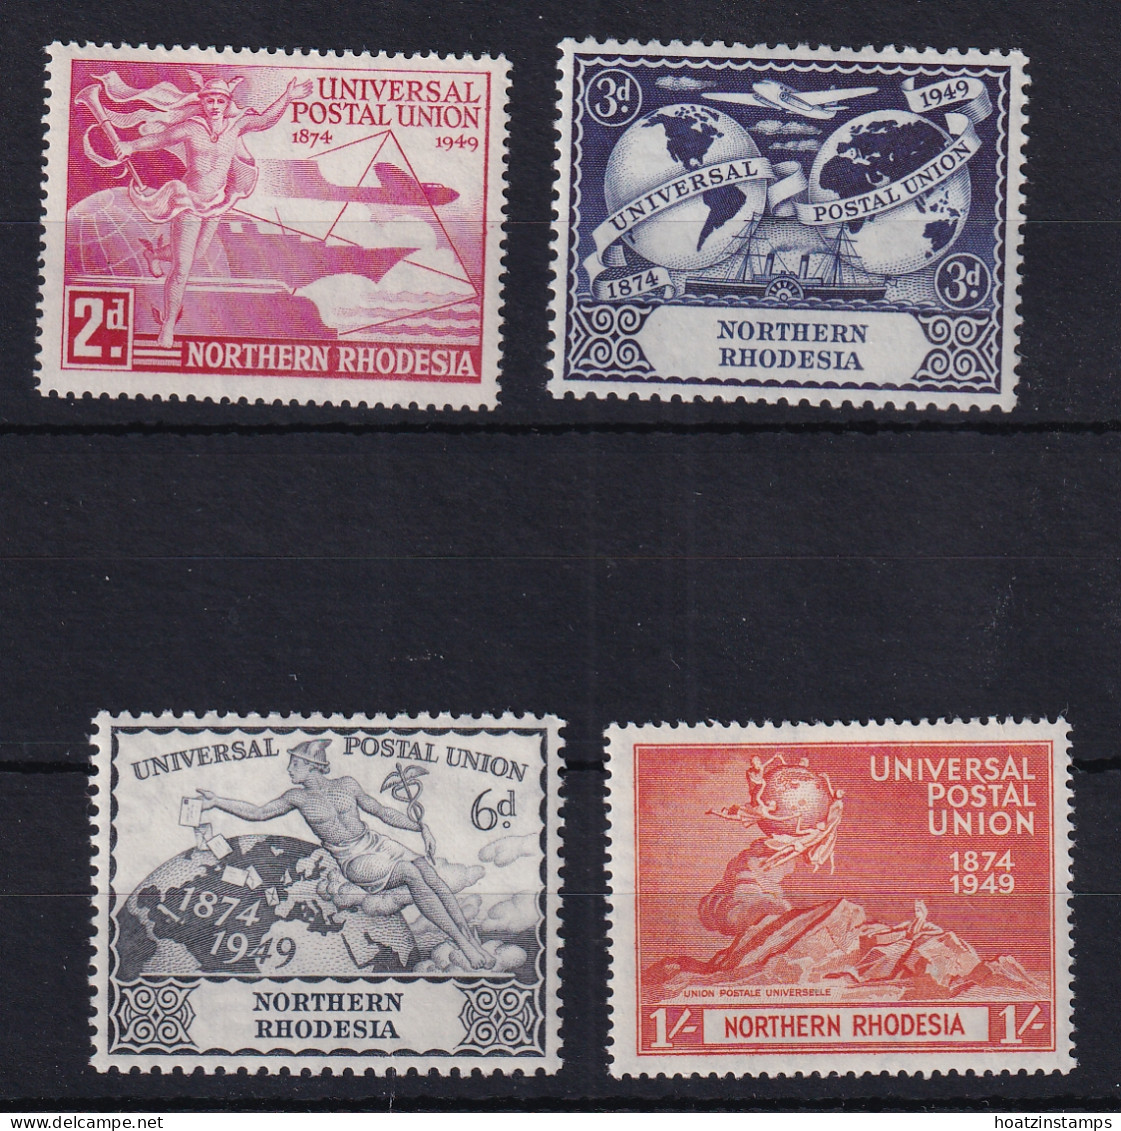 Northern Rhodesia: 1949   U.P.U.     MNH - Northern Rhodesia (...-1963)